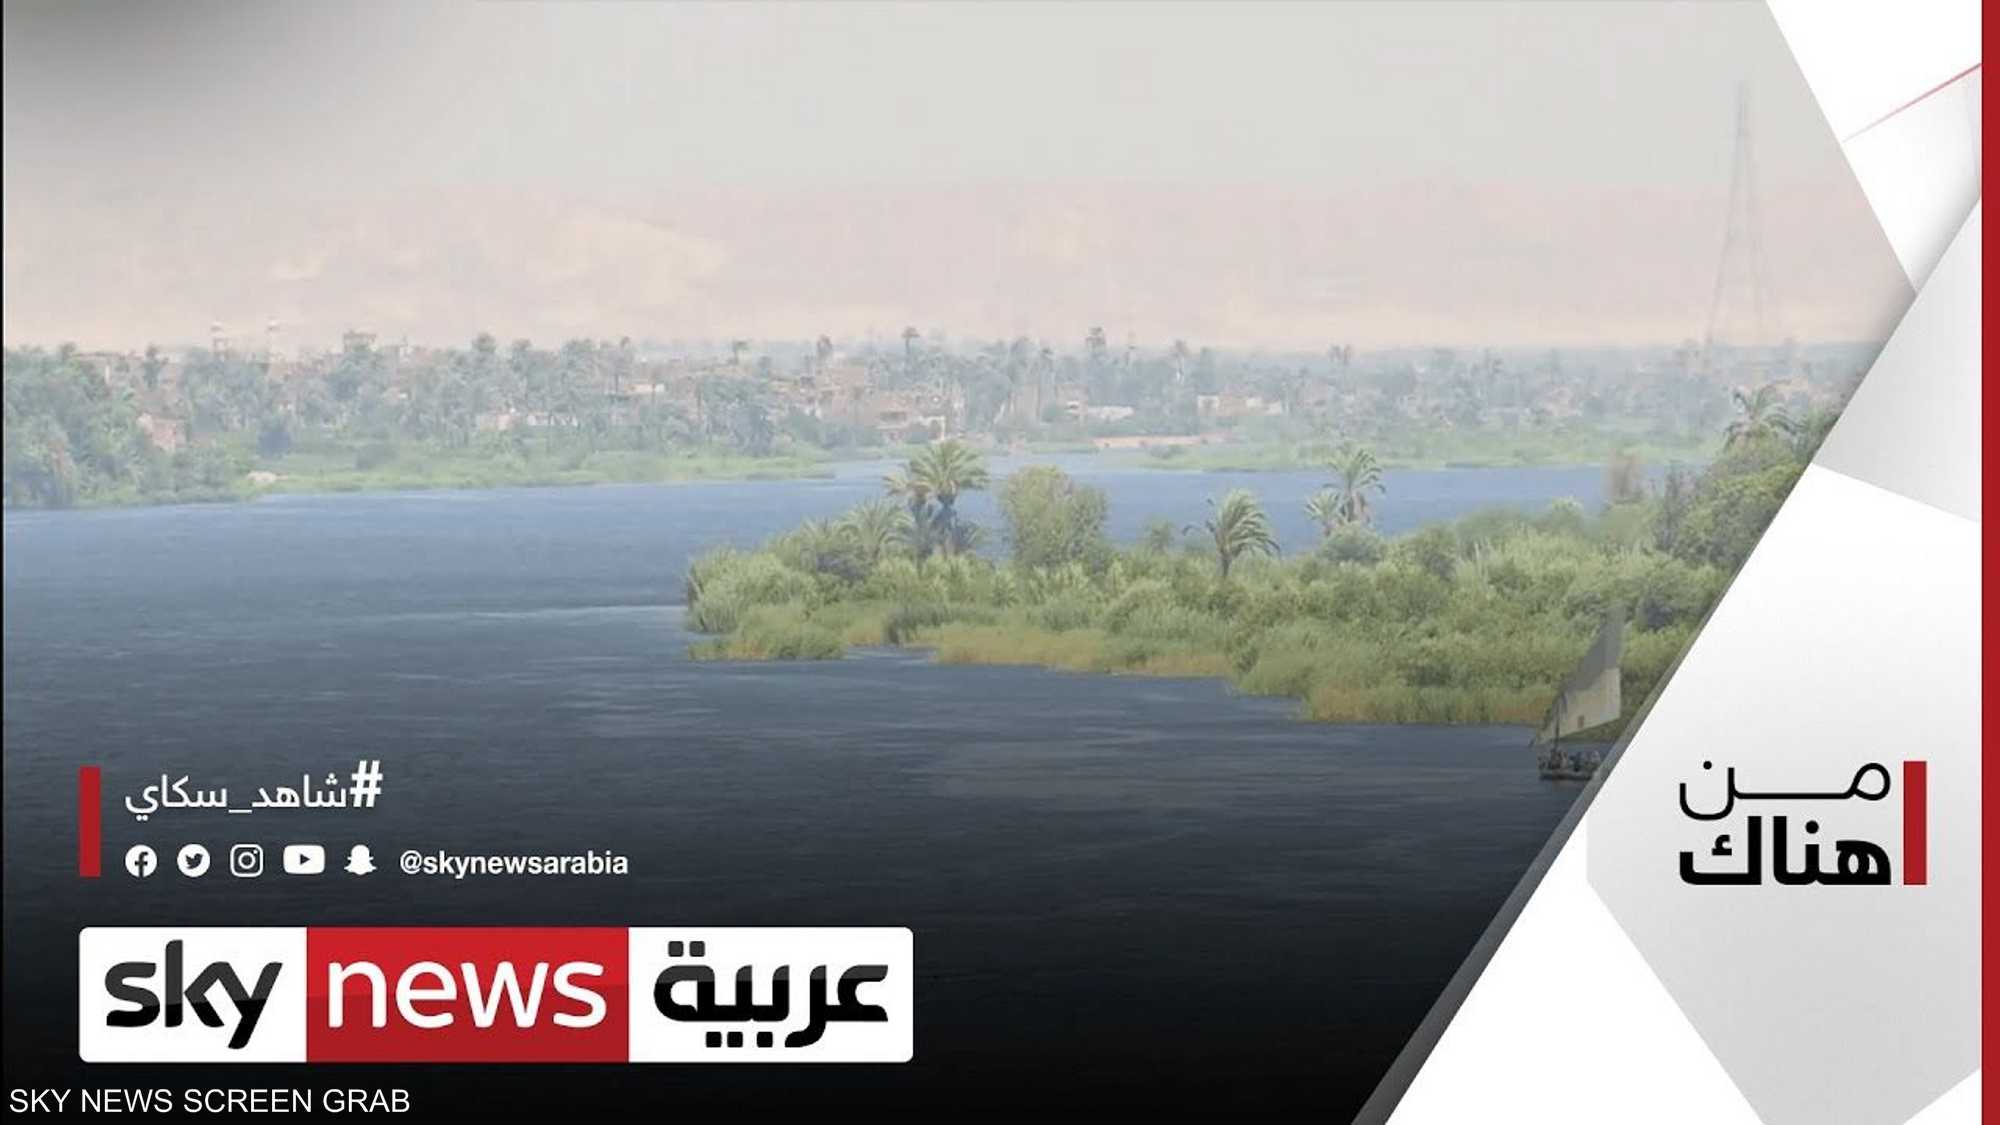 مشروع تحديث منظومة الري في مصر..فوائد جمة في قطاع الزراعة